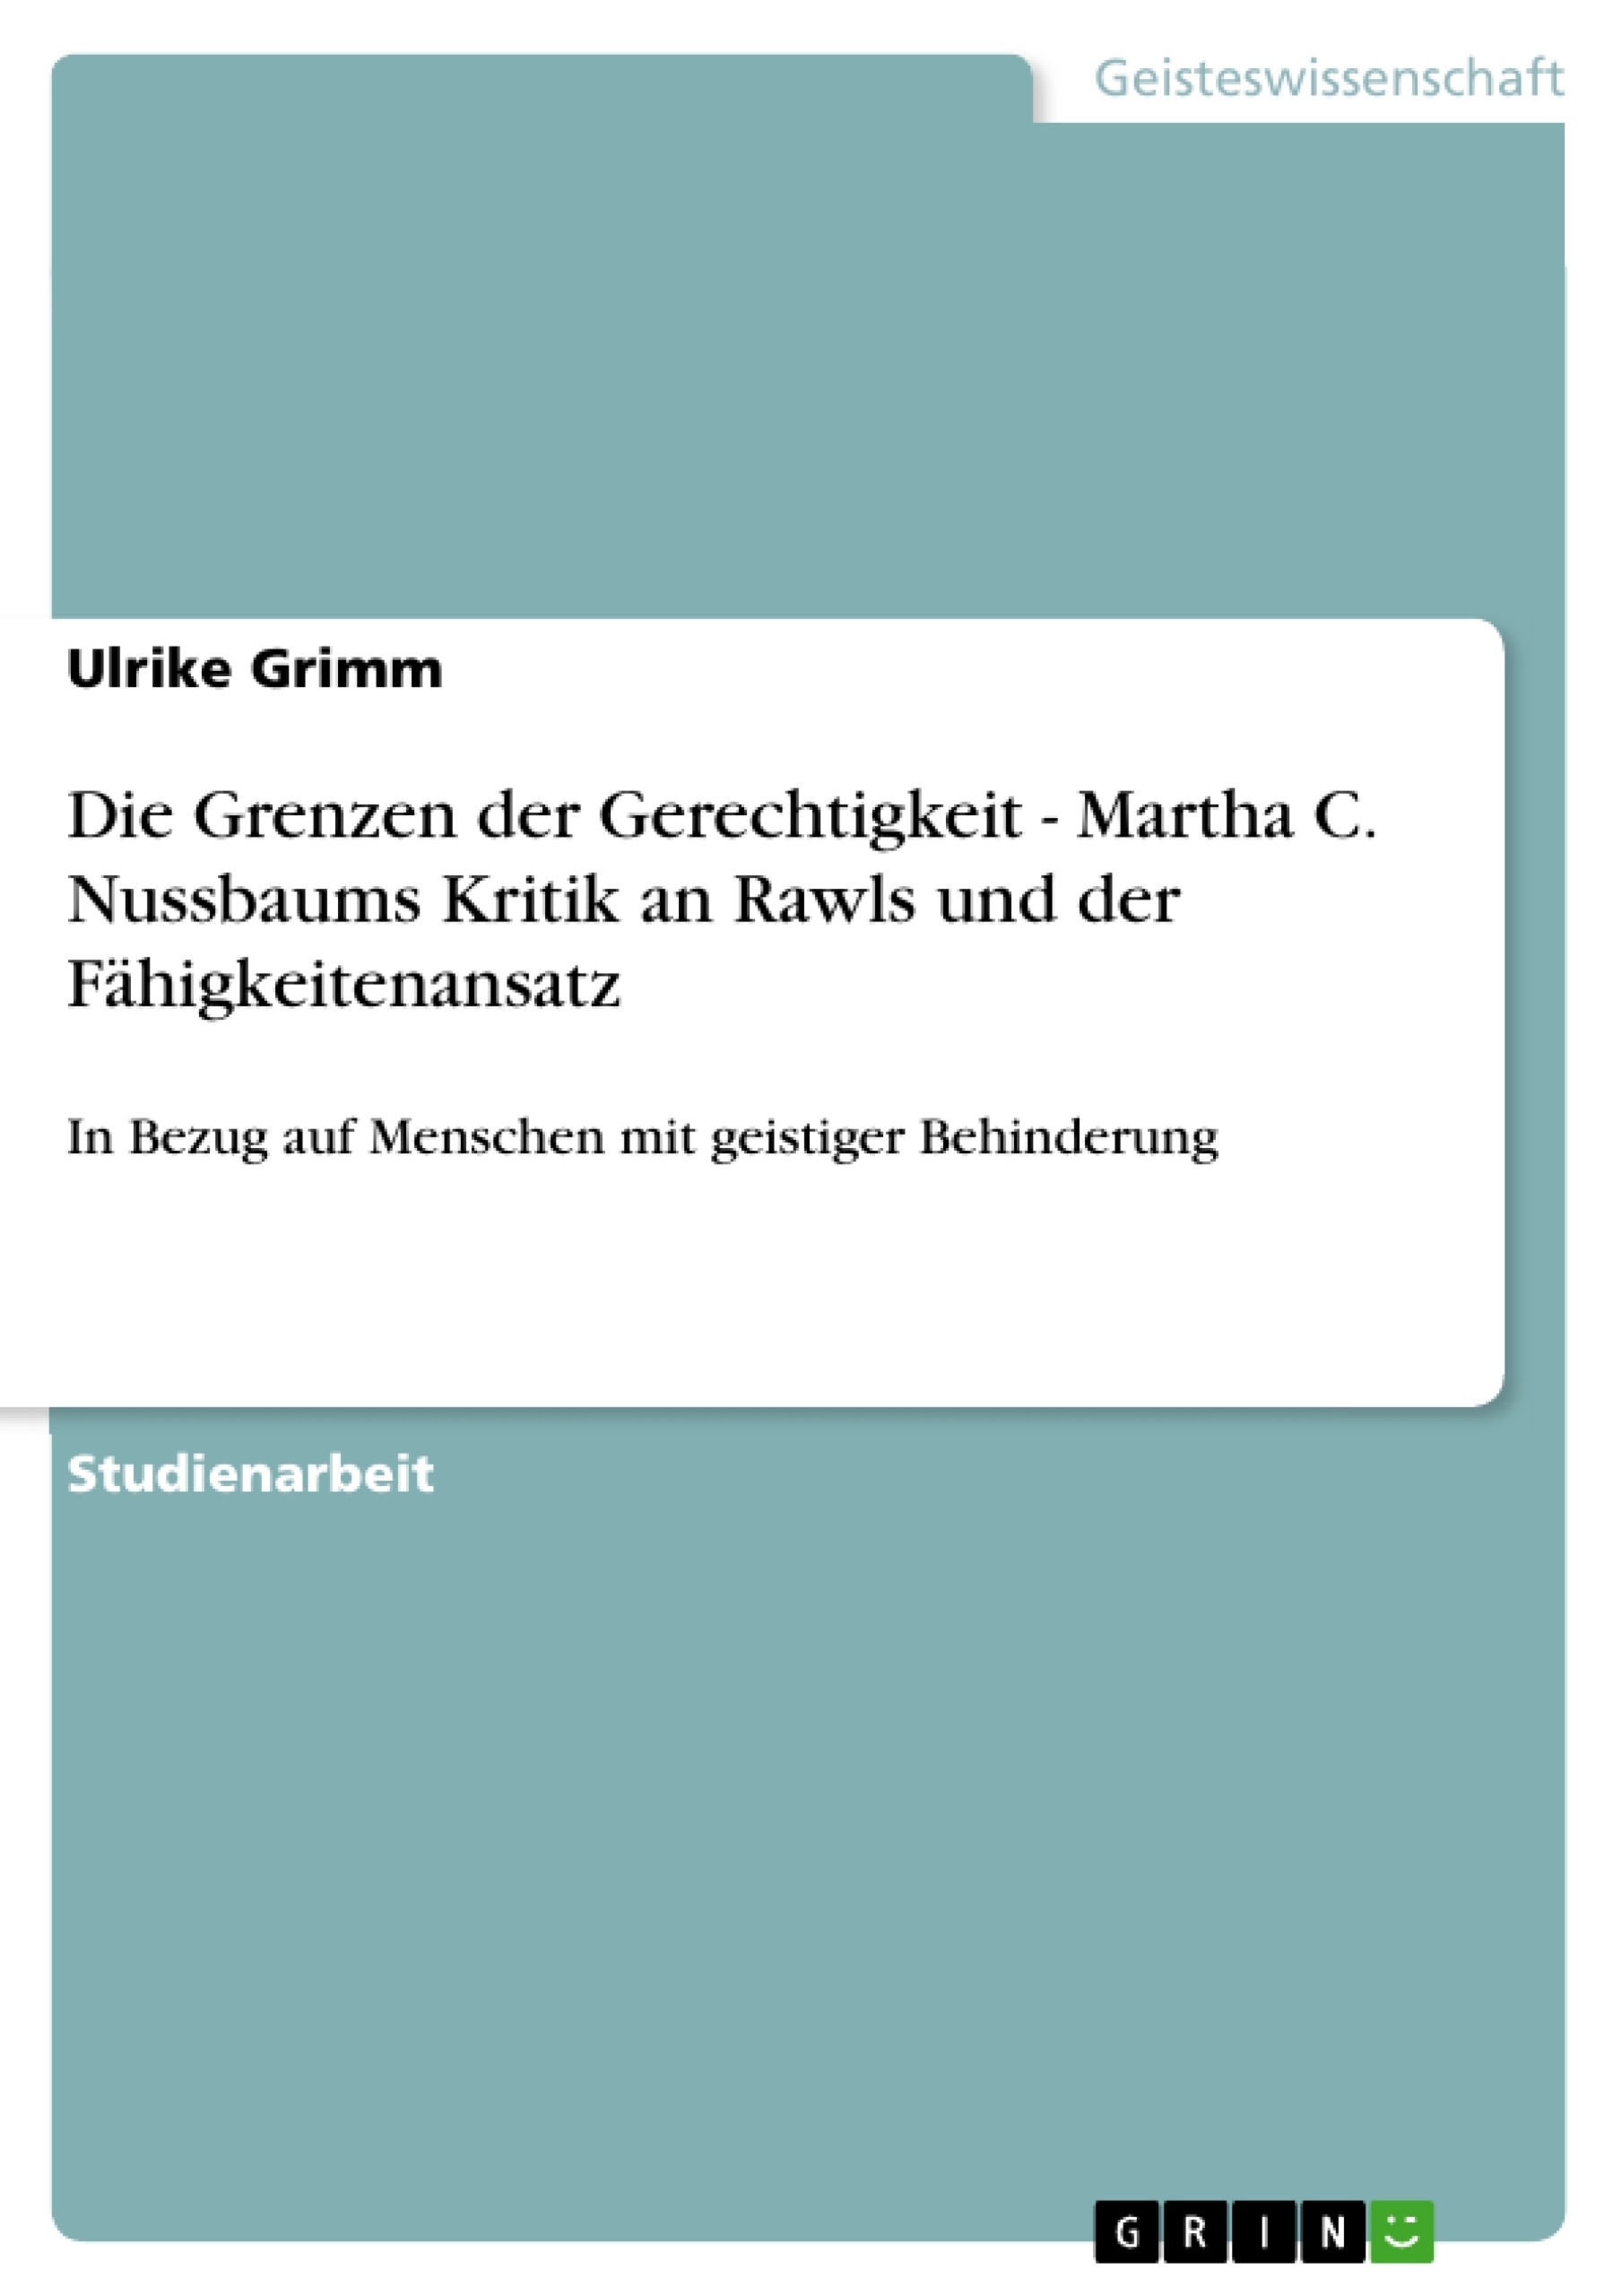 Título: Die Grenzen der Gerechtigkeit - Martha C. Nussbaums Kritik an Rawls und der Fähigkeitenansatz